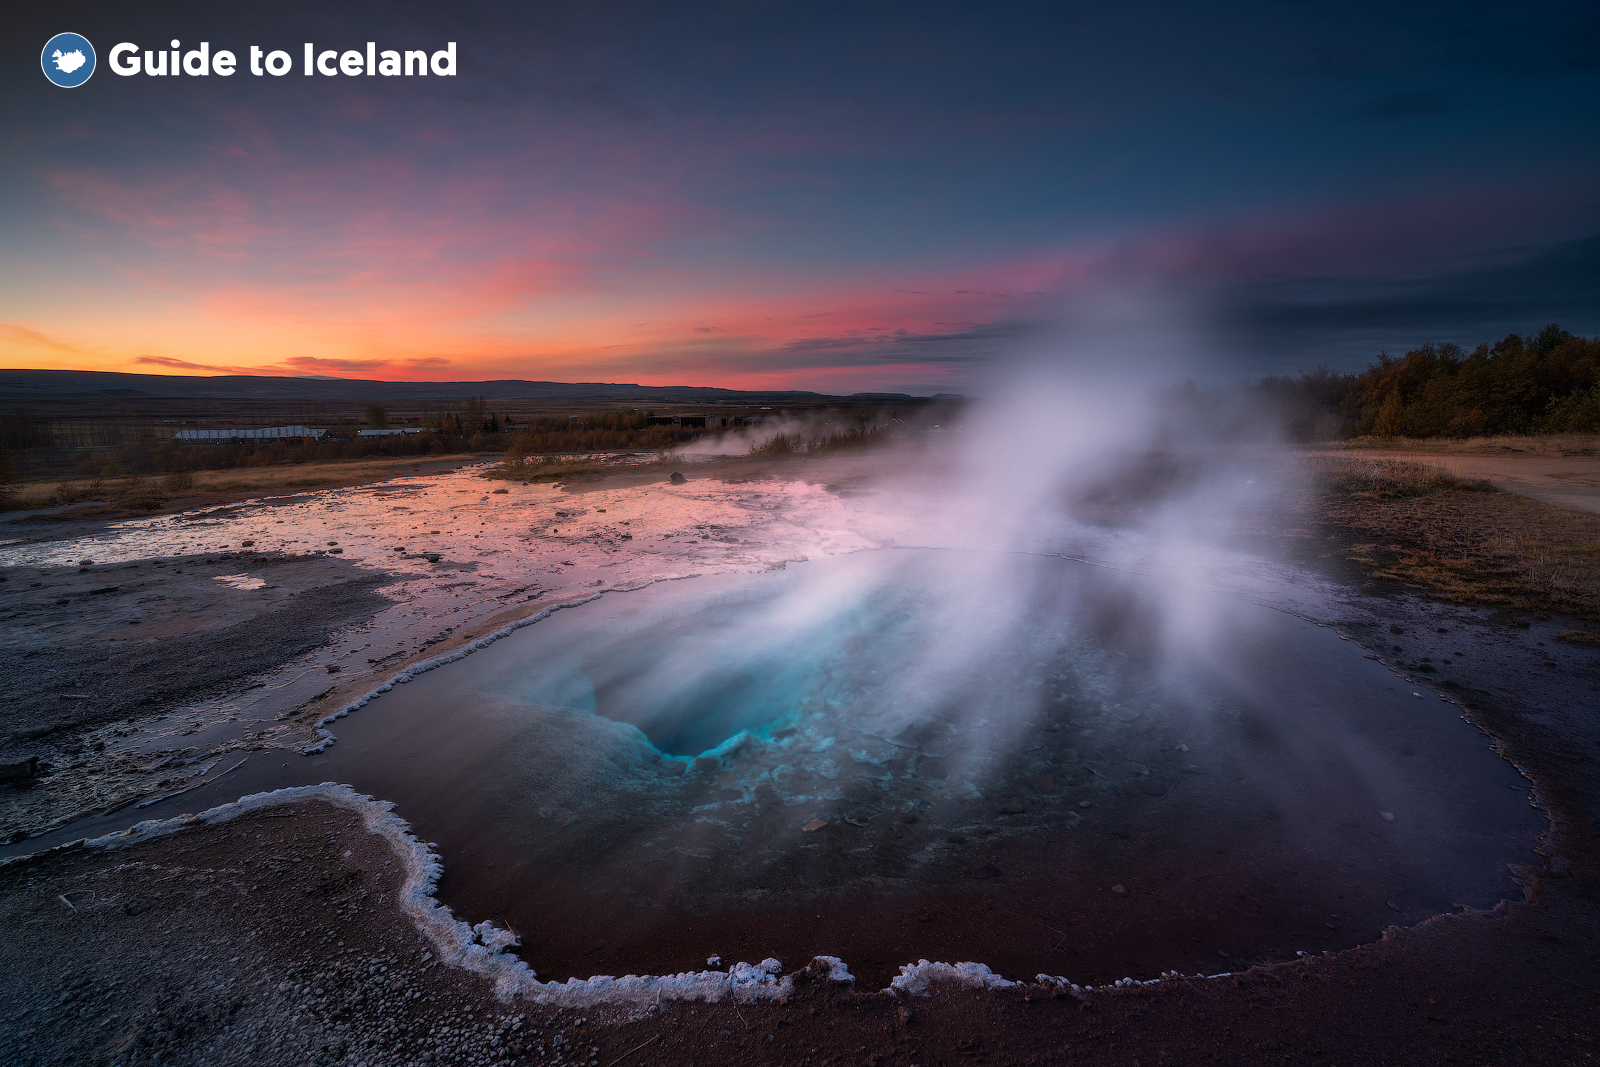 Le acque ricche di minerali di un geyser nell'area geotermica di Geysir.